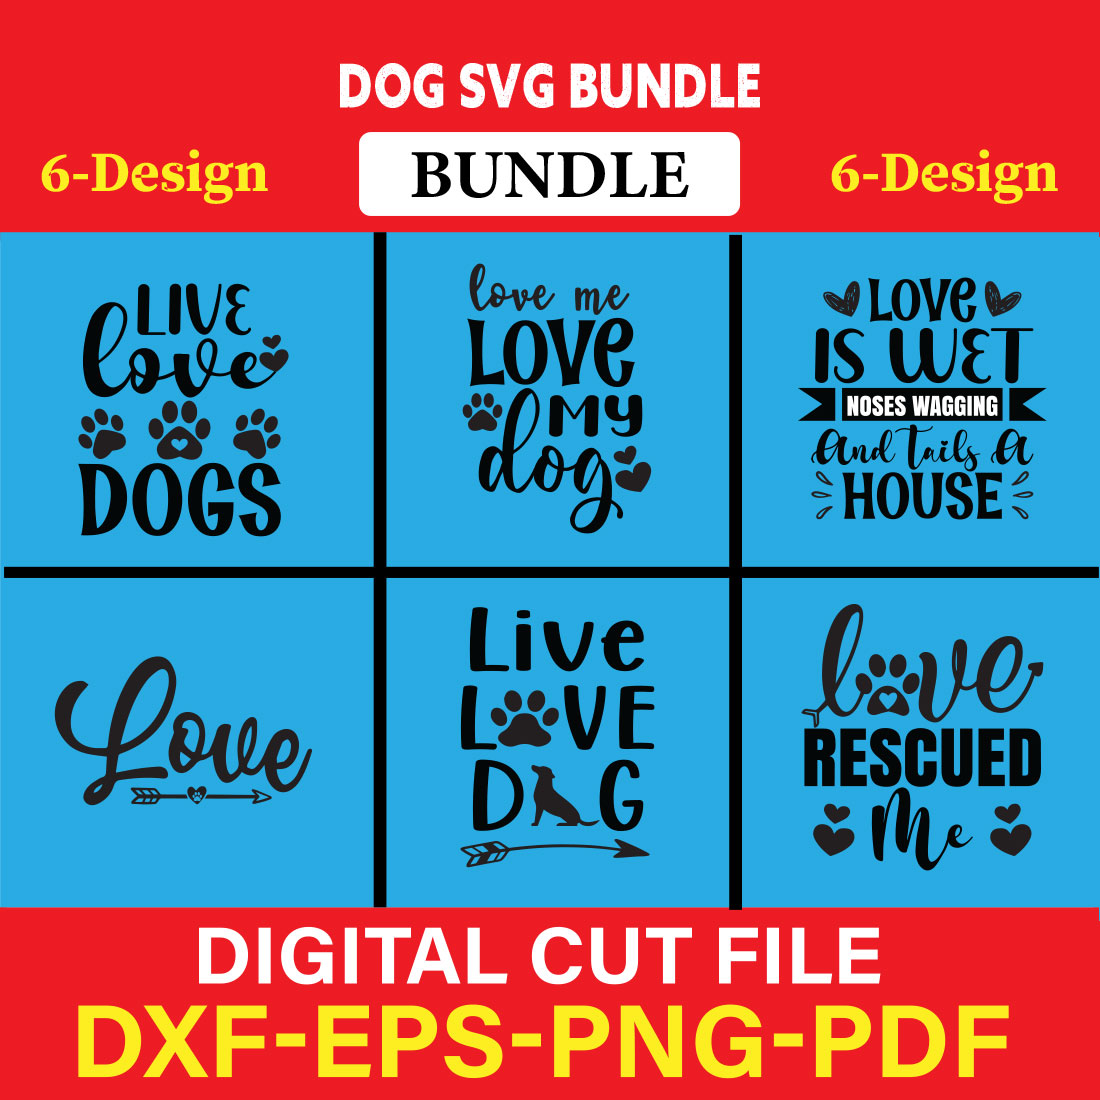 Dog T-shirt Design Bundle Vol-7 cover image.